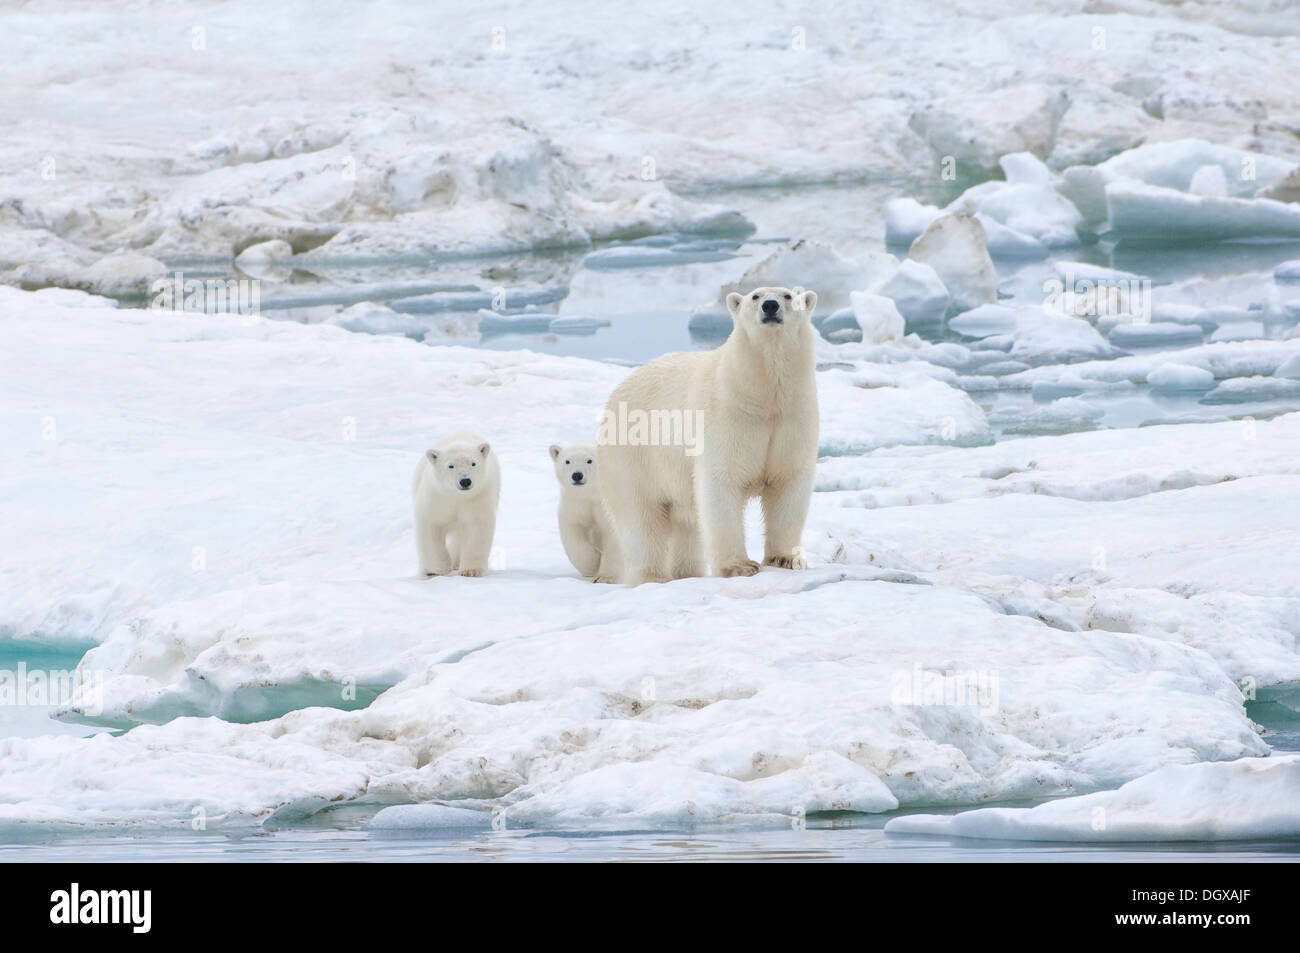 Mère ours polaire avec deux oursons (Ursus maritimus), l'île Wrangel, Chuckchi Mer, Tchoukotka, Extrême-Orient russe Banque D'Images